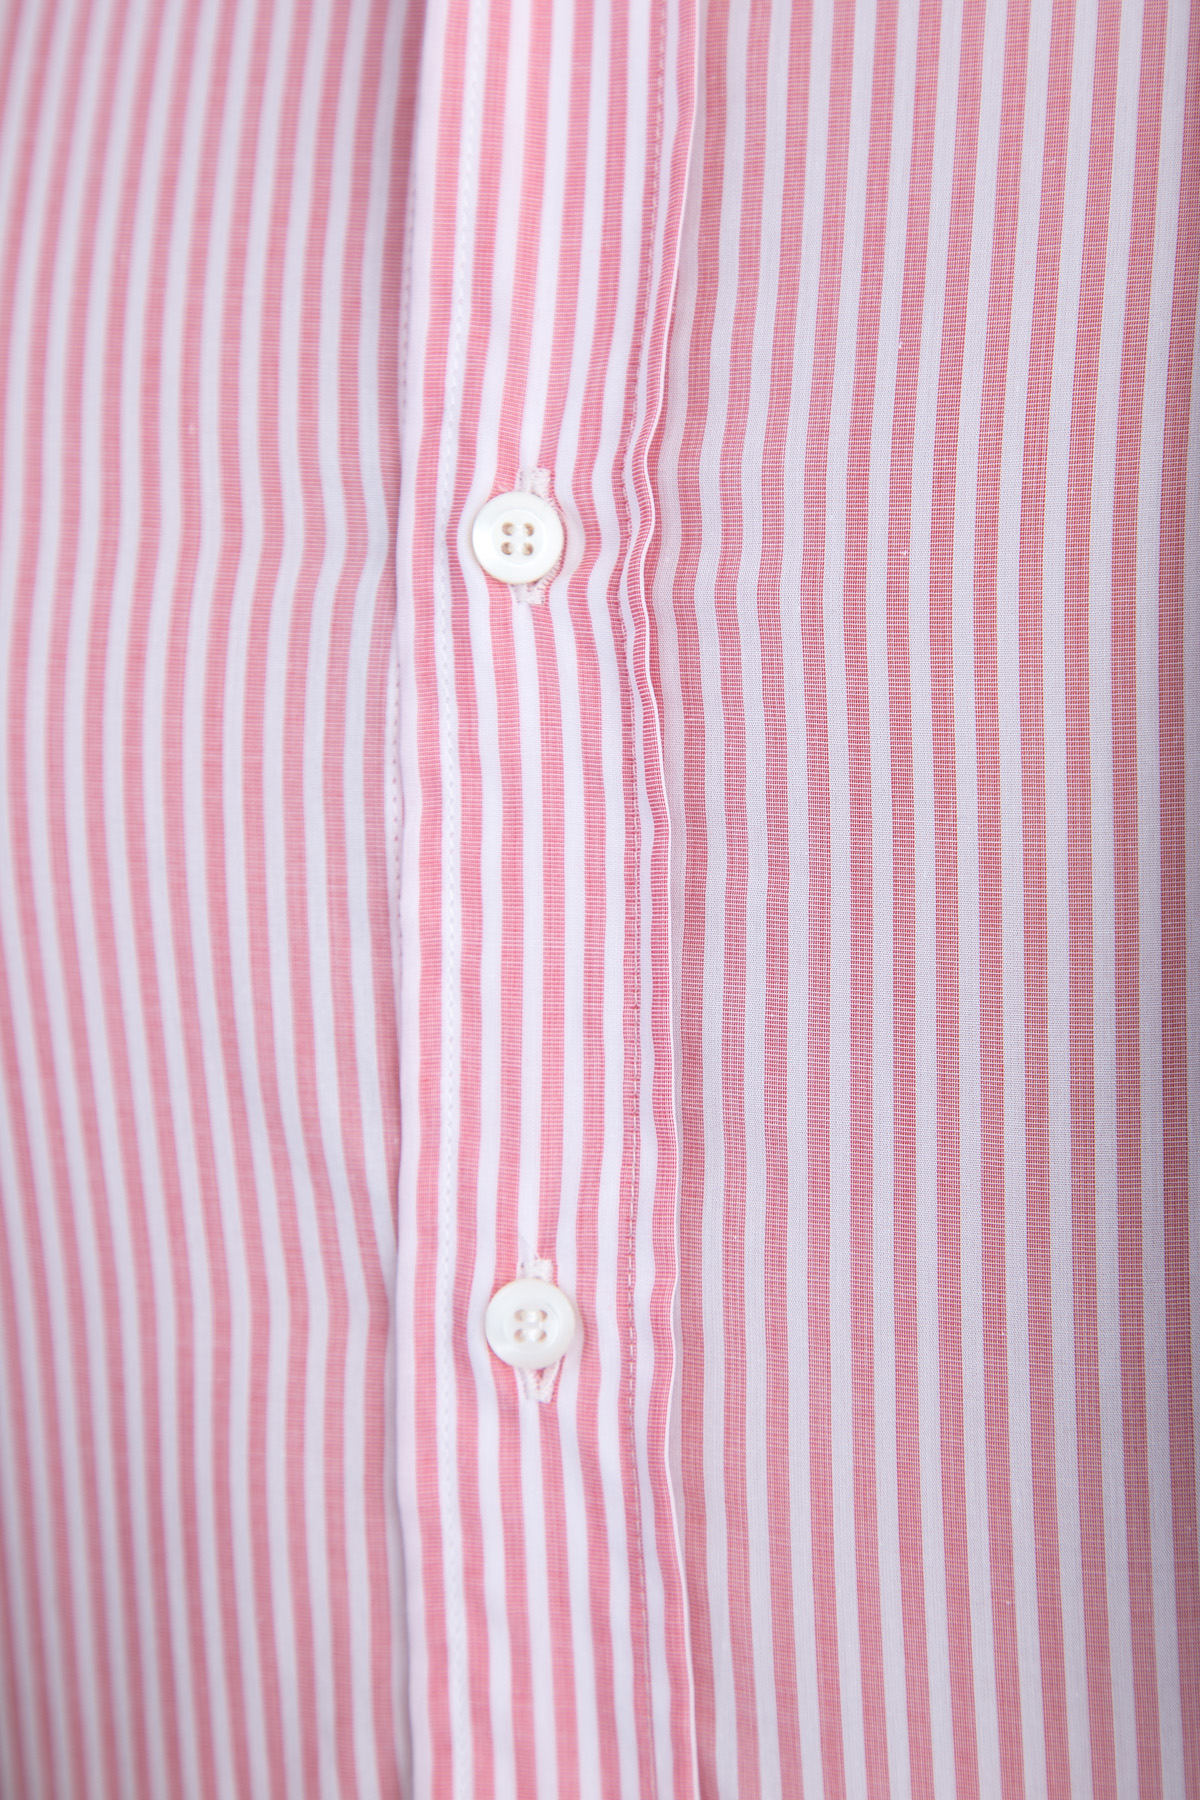 Хлопковая рубашка с узором в виде вертикальных полос розового цвета BRUNELLO CUCINELLI, размер 48 - фото 5